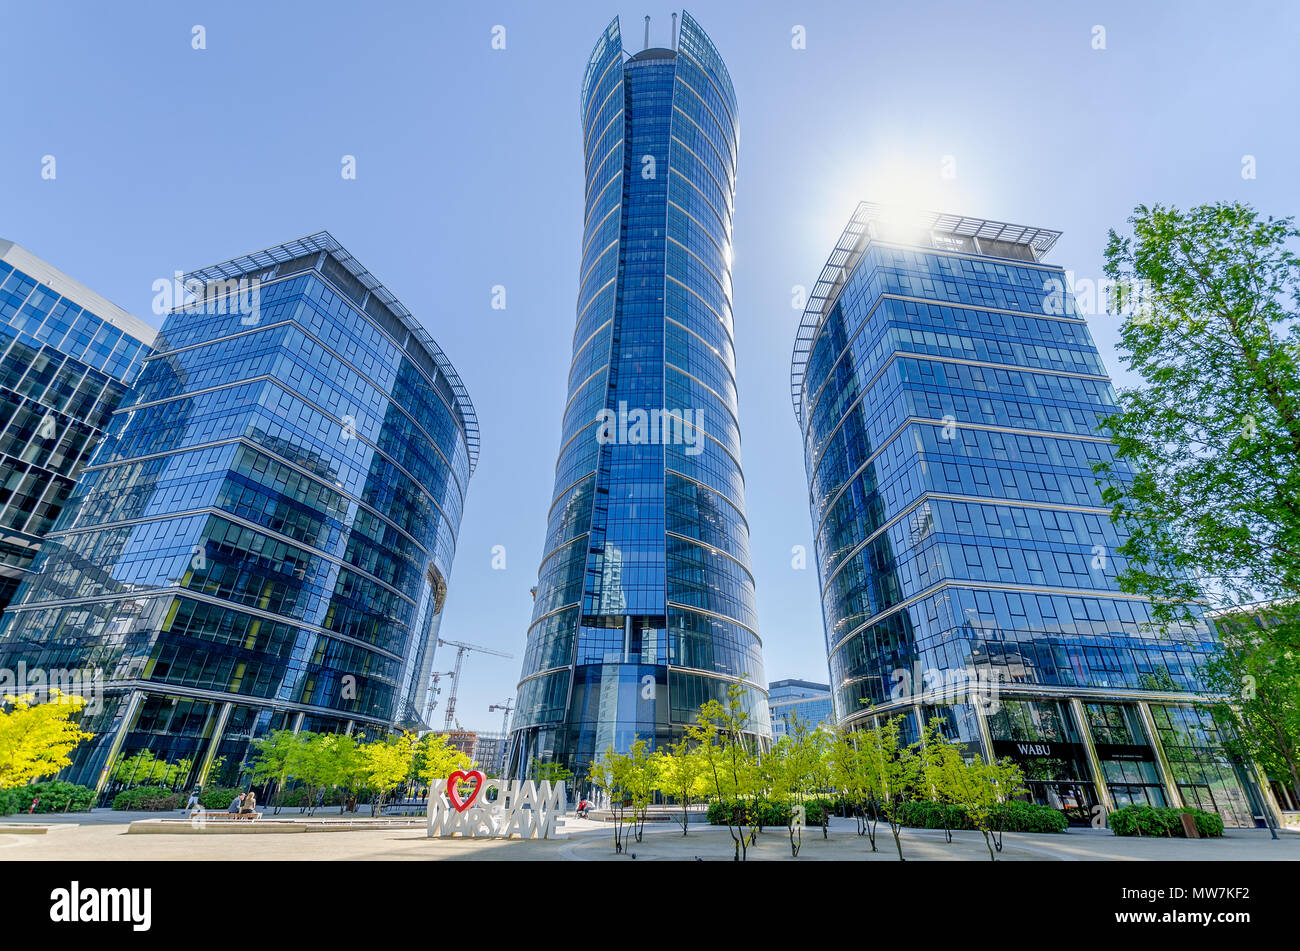 Varsovie, Pologne. La place européenne et Varsovie Spire, le plus haut immeuble de bureaux à Varsovie (220 m.) Banque D'Images